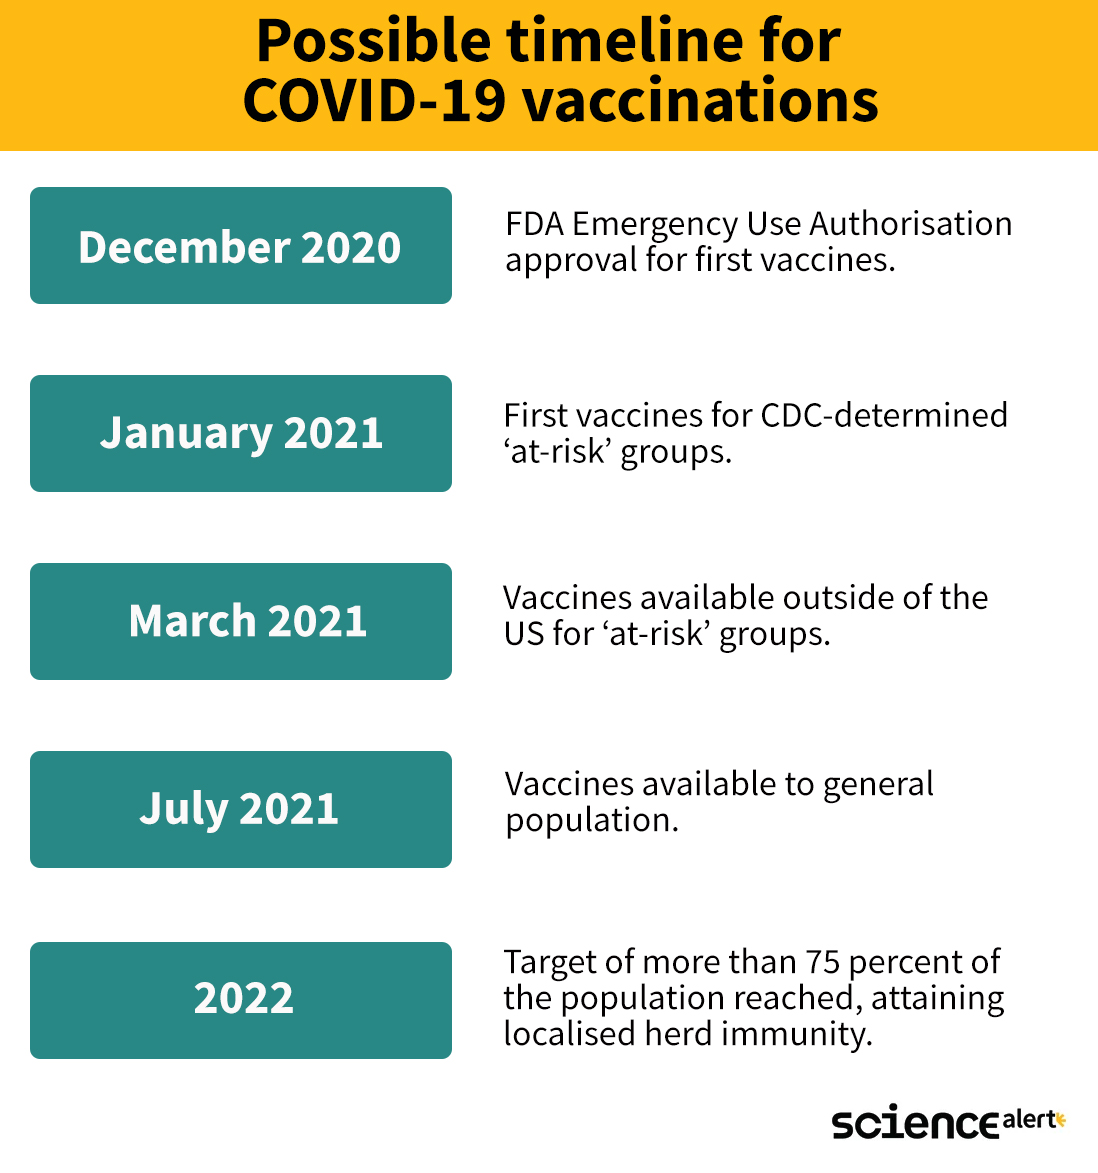 pfizer covid vaccine infographic